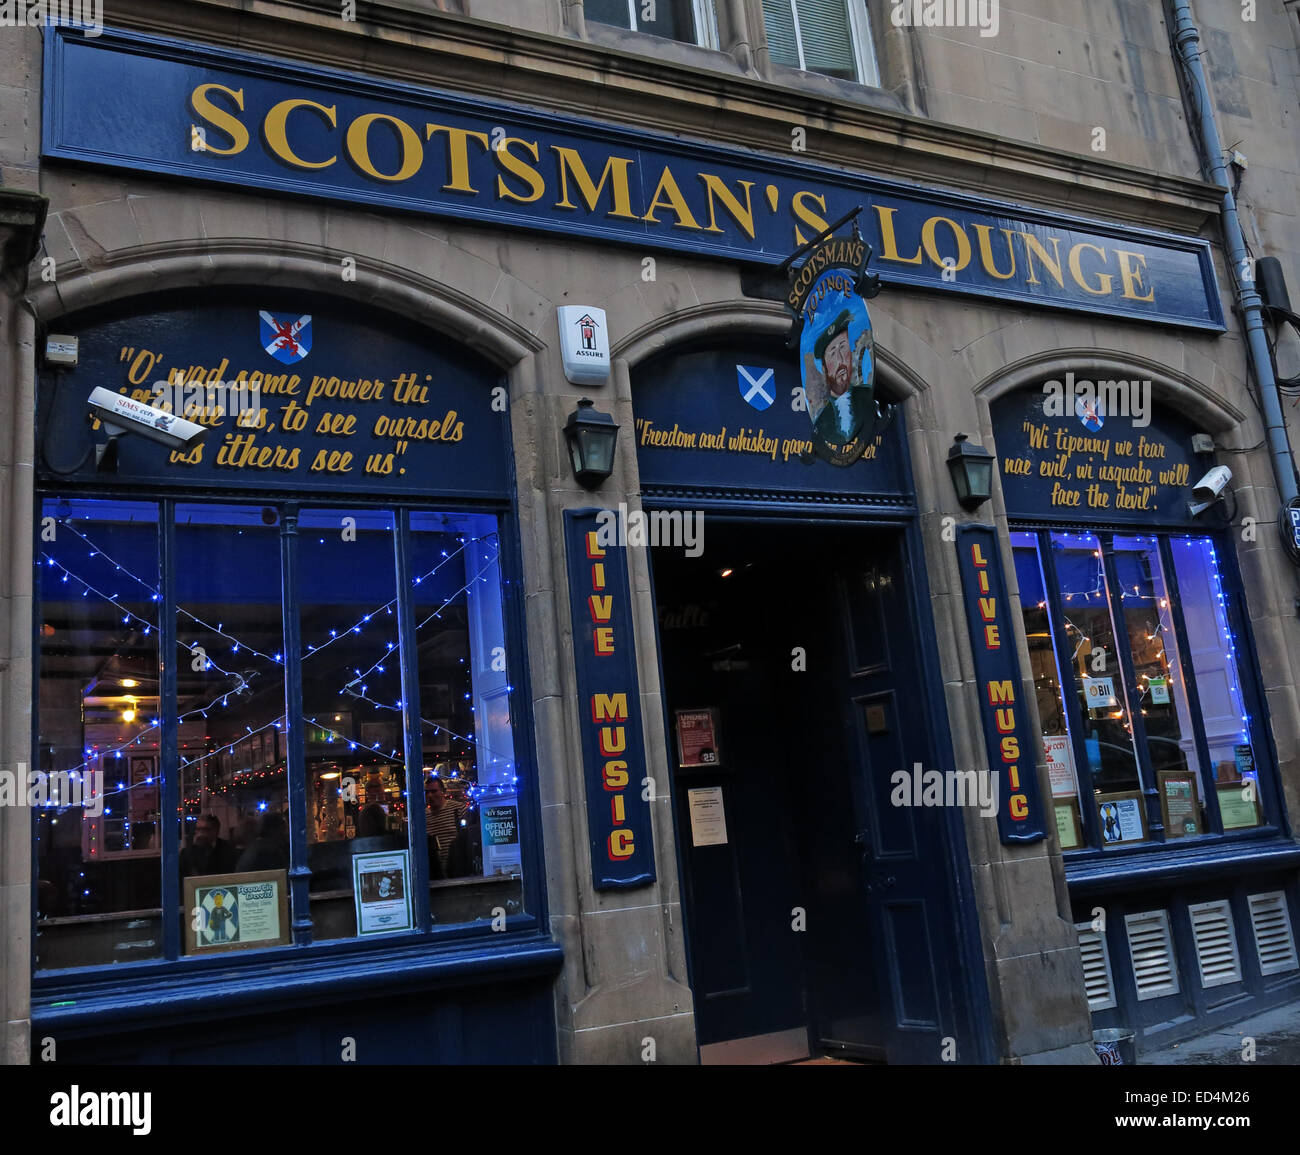 Vue de l'extérieur de l'Scotsmans lounge pub traditionnel, Cockburn Street, Edinburgh, Ecosse, Royaume-Uni Banque D'Images